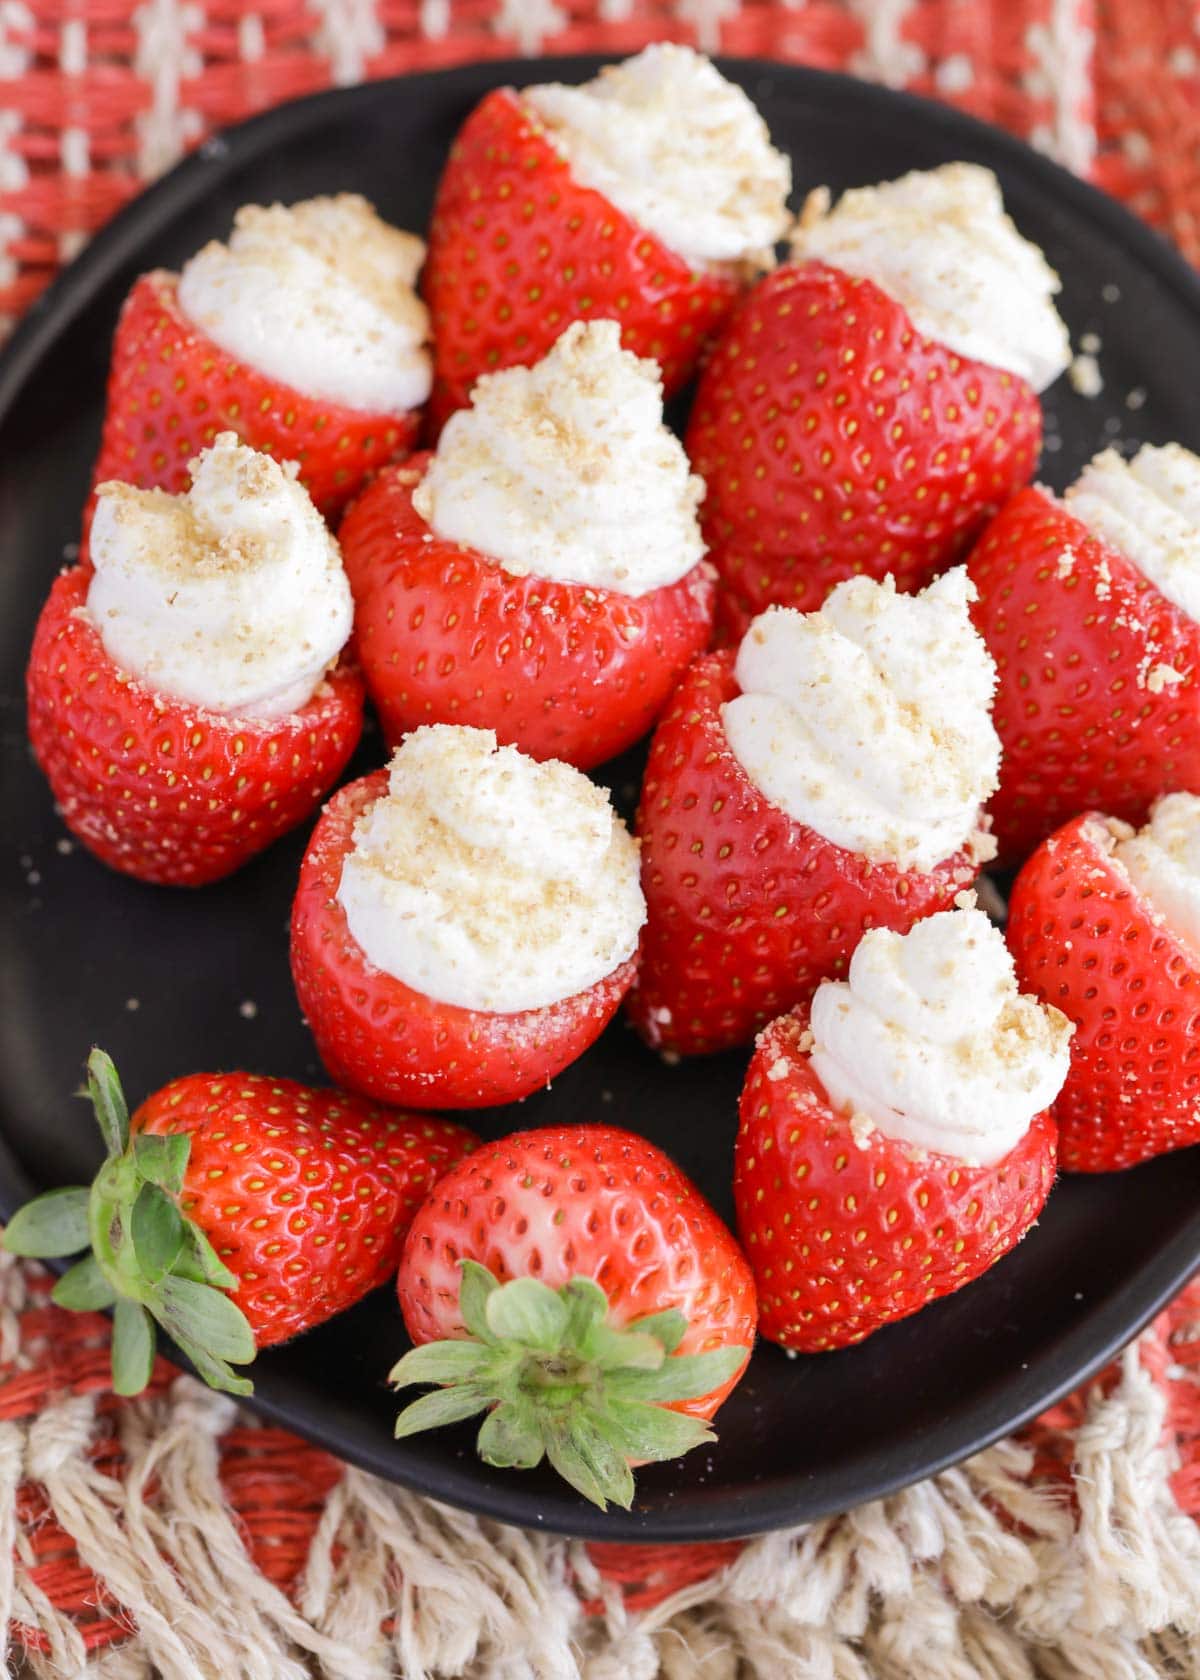 A plate full of cheesecake stuffed strawberries